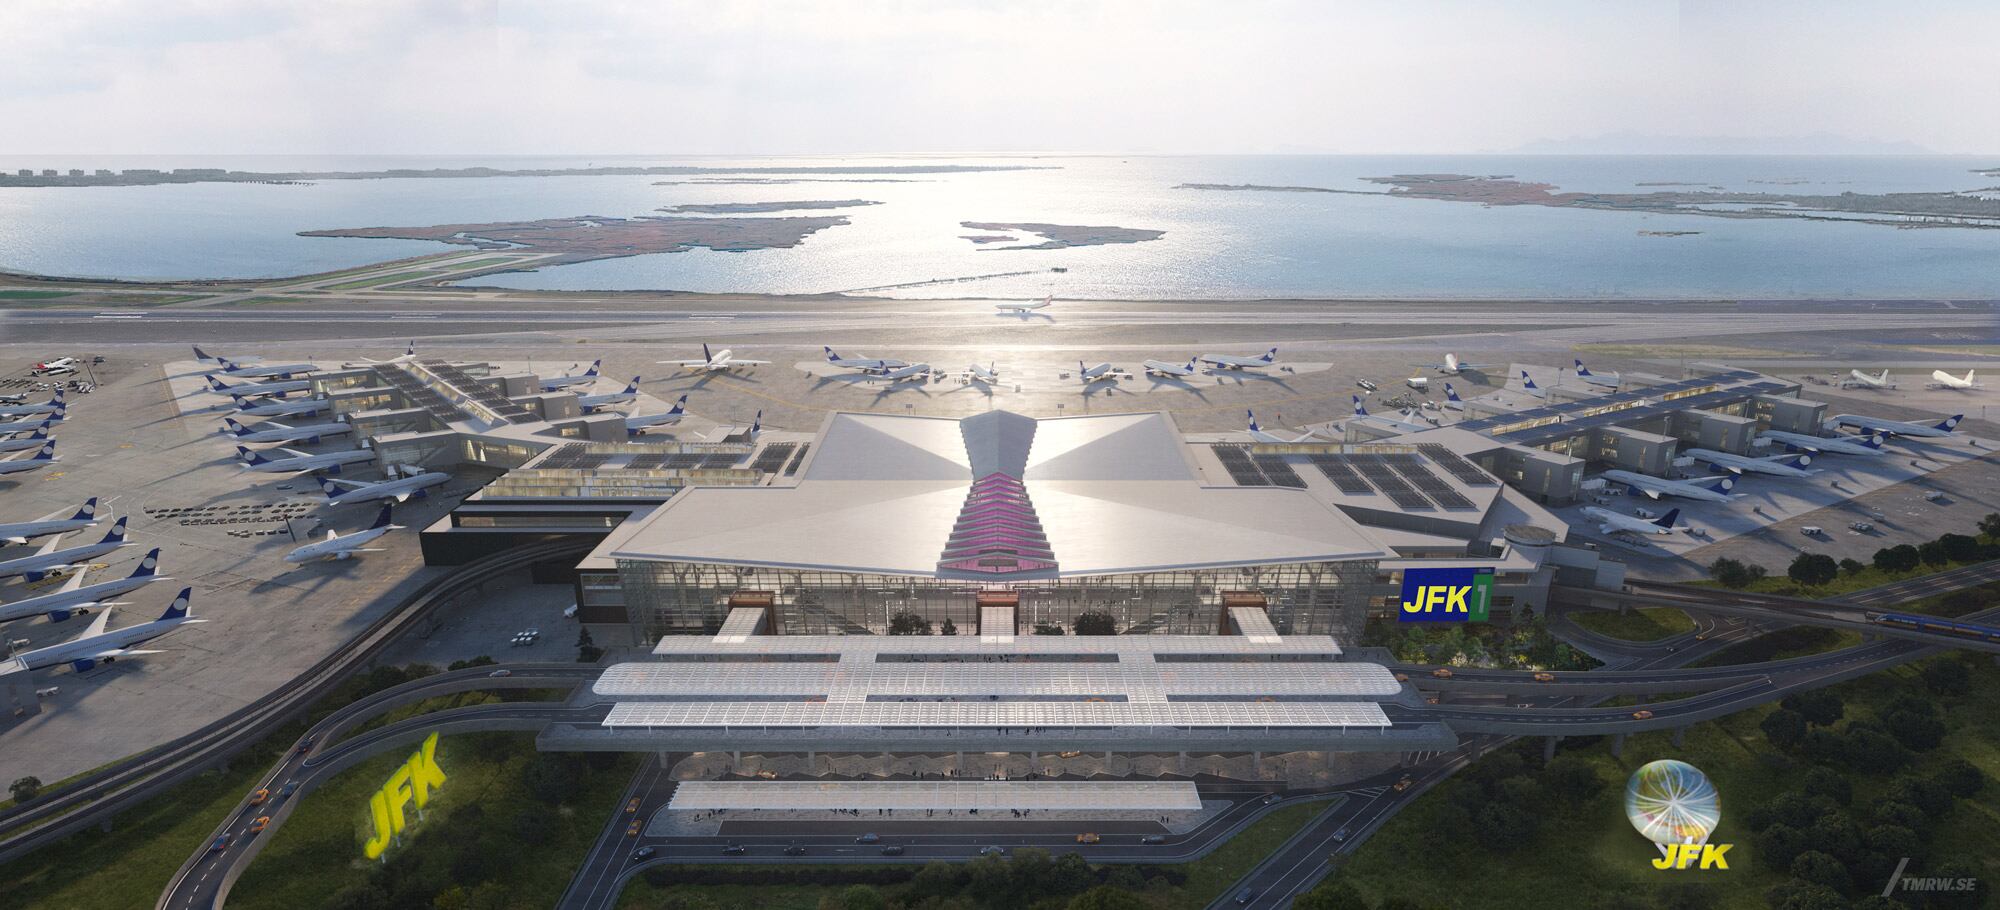 Diseño exterior de la Terminal 1 del aeropuerto JFK de Nueva York (EE UU).